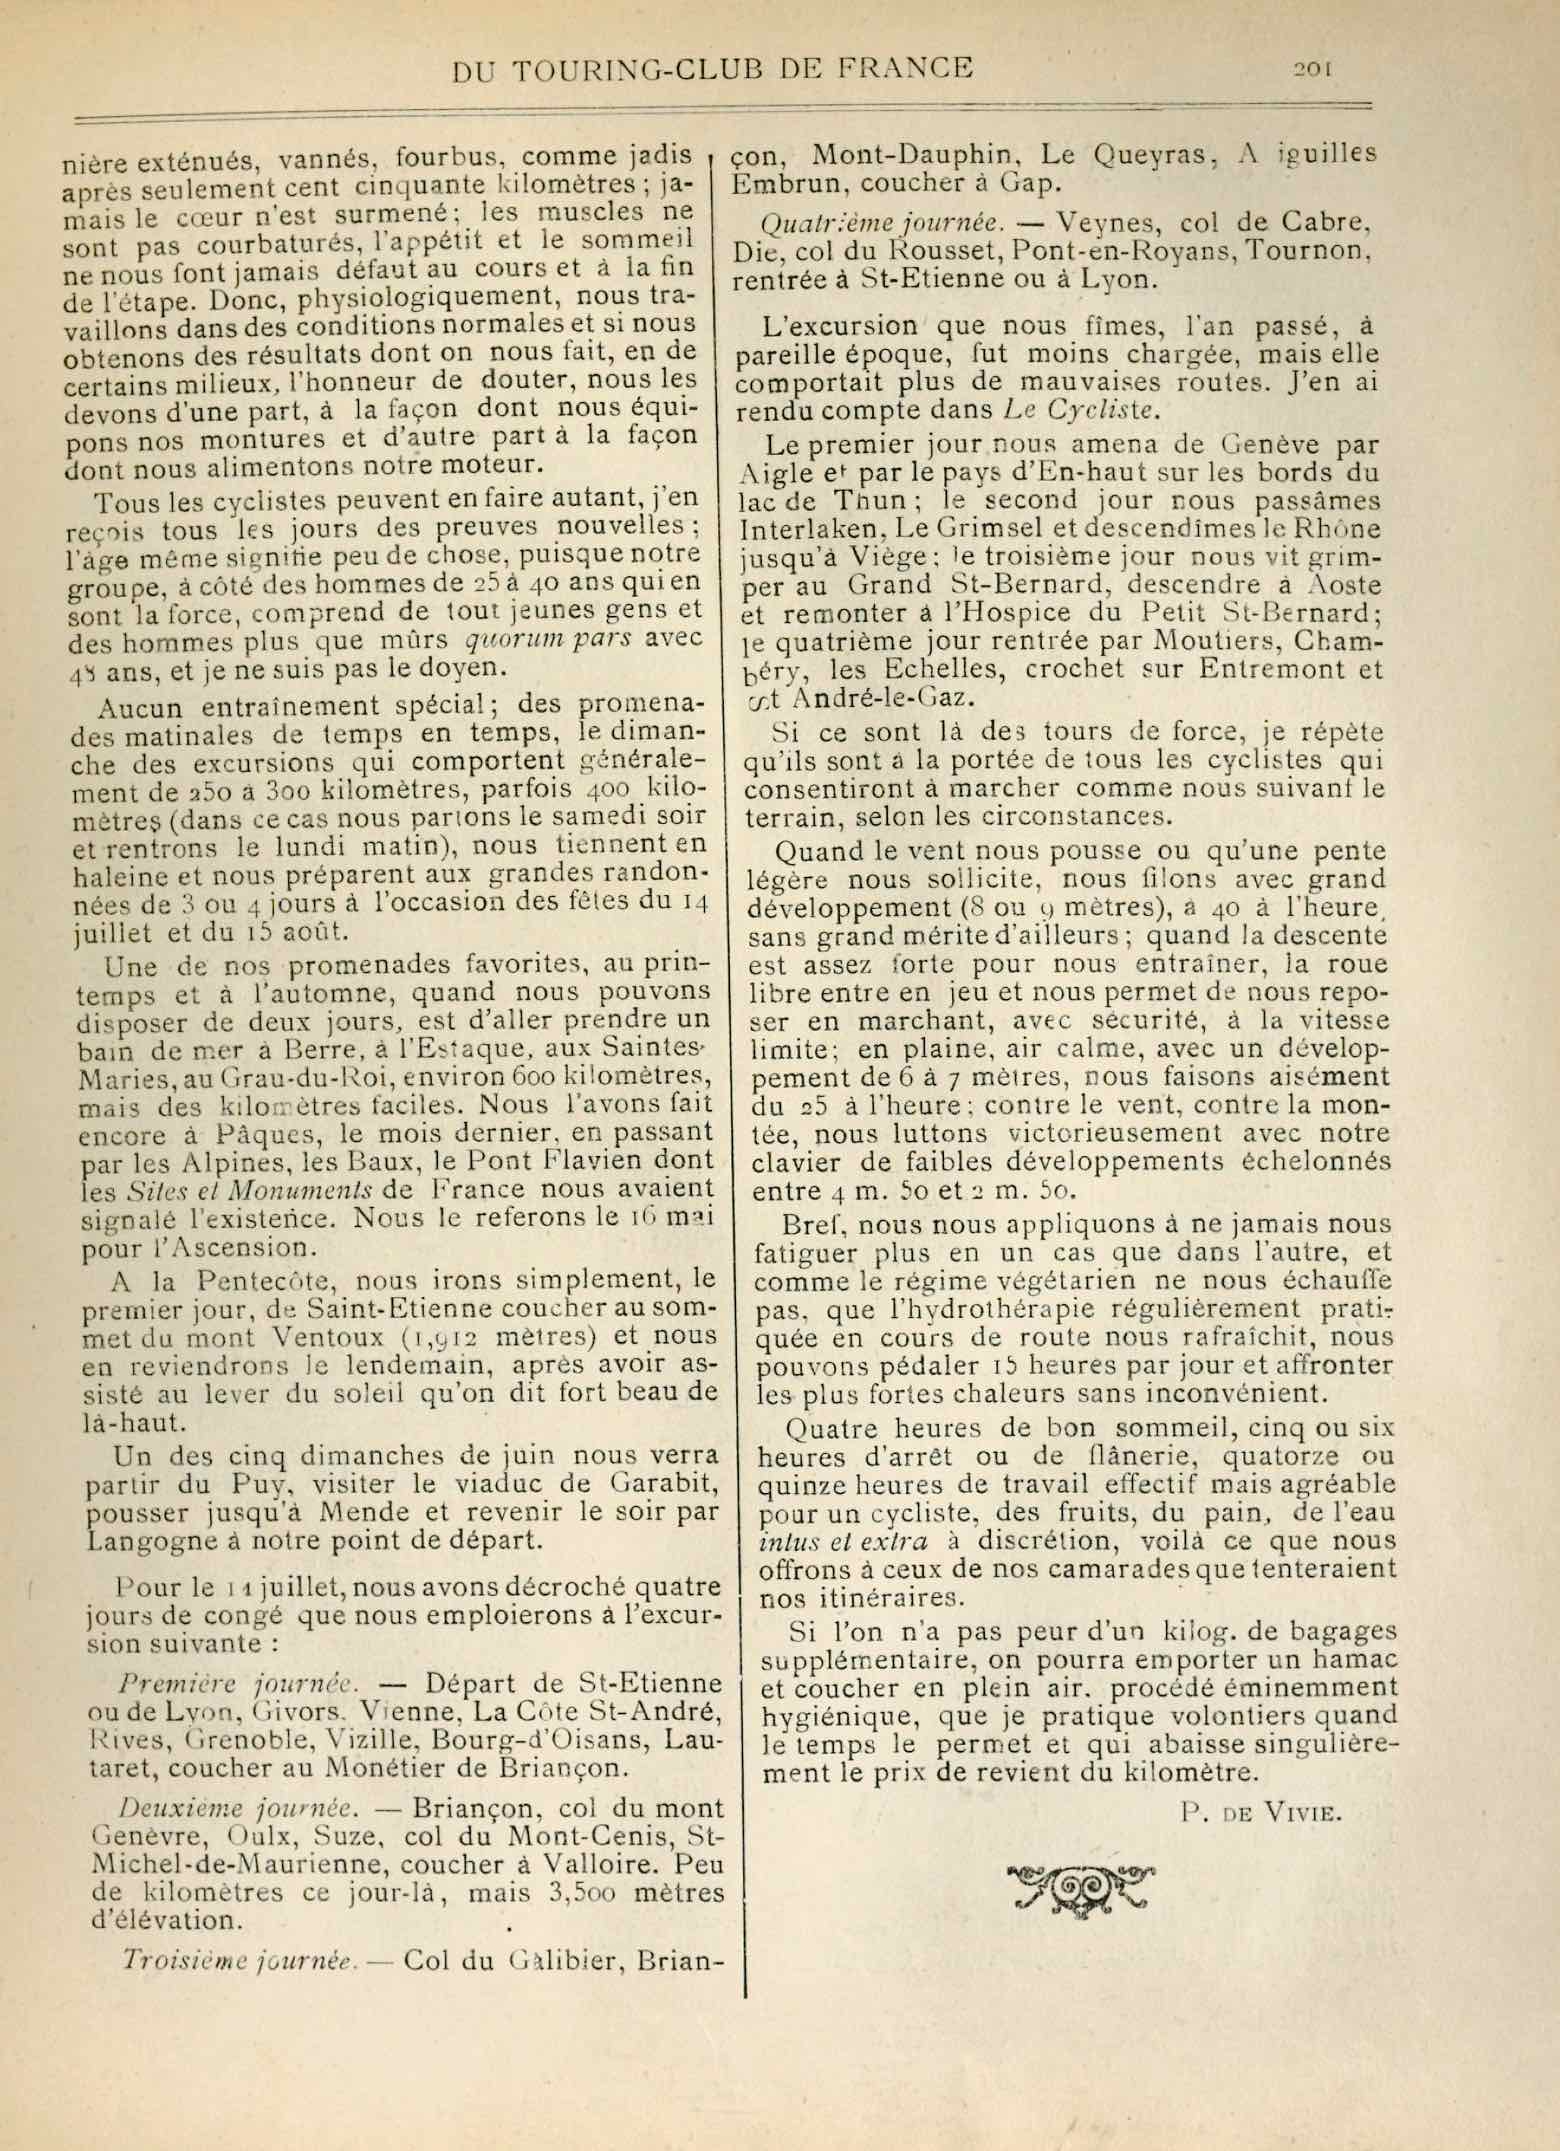 T.C.F. Revue Mensuelle May 1901 - Sur le terrain scan 2 main image